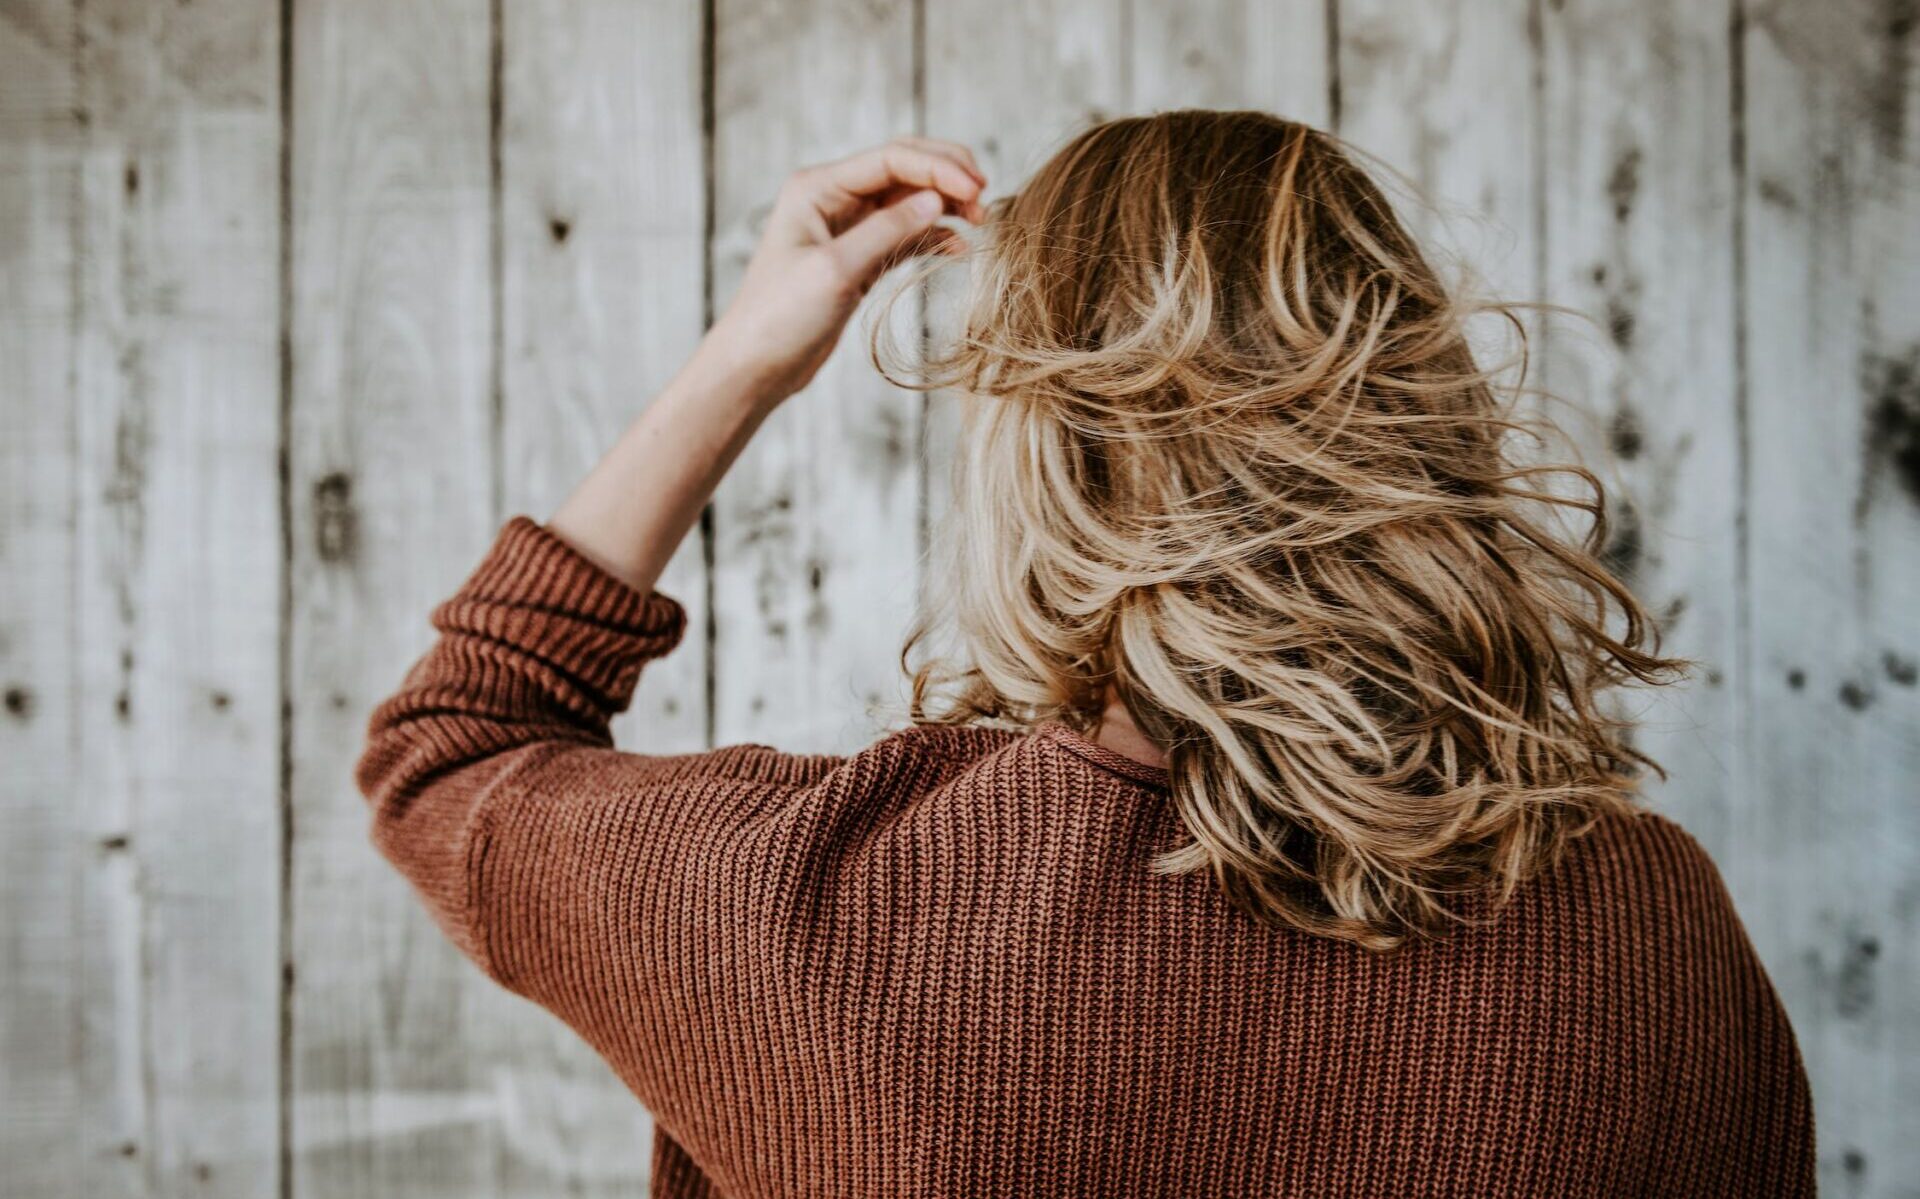 Proste triki na piękną fryzurę. Jak zwiększyć objętość włosów? /fot. pexels